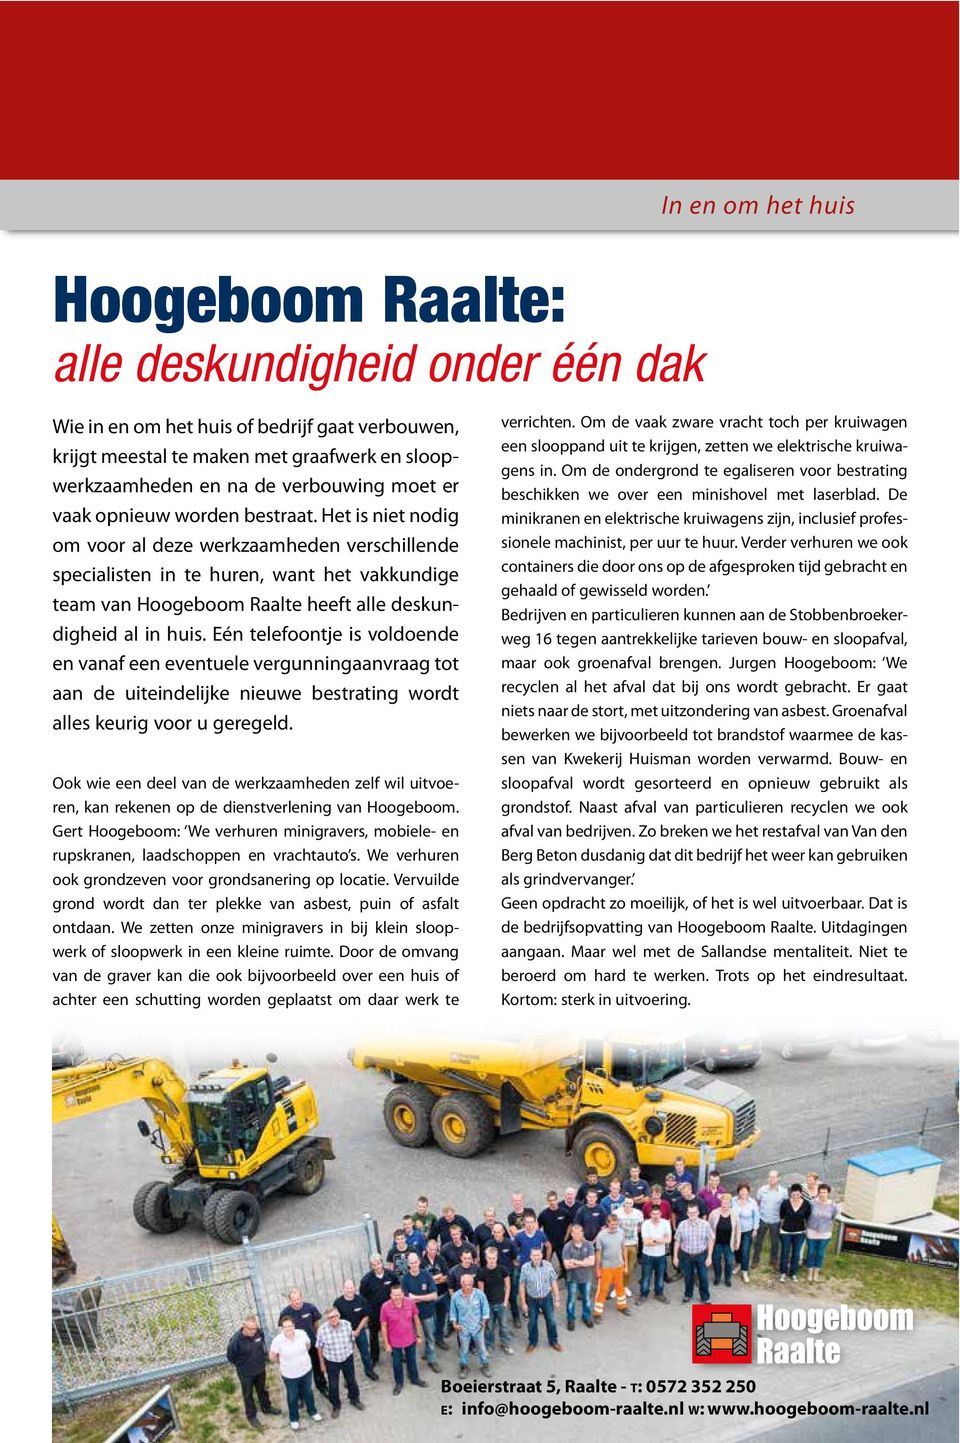 Het is niet nodig om voor al deze werkzaamheden verschillende specialisten in te huren, want het vakkundige team van Hoogeboom Raalte heeft alle deskundigheid al in huis.